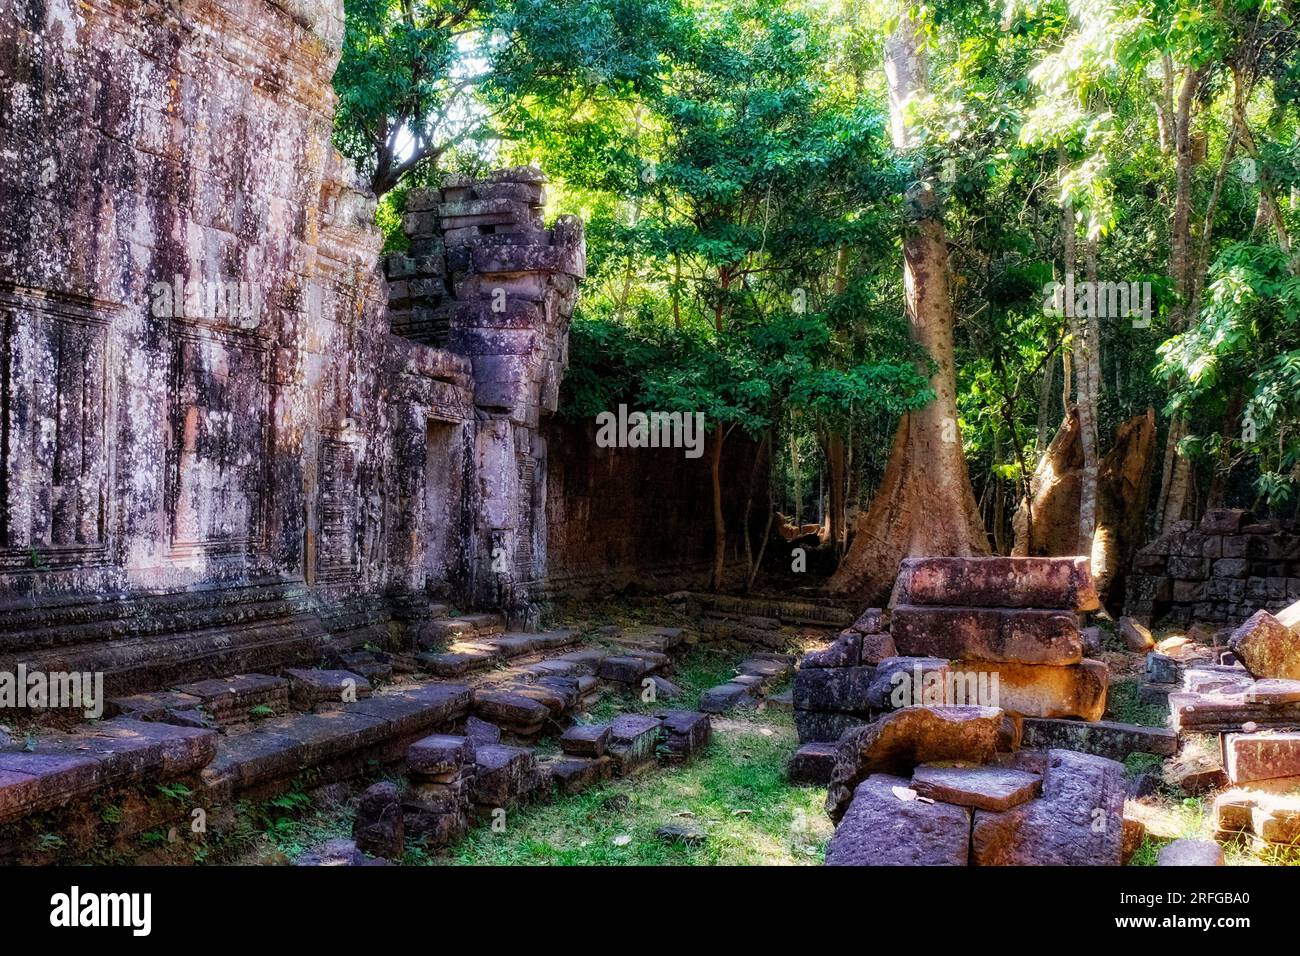 Ruines sereines : vestiges anciens de la civilisation khmère dans la forêt cambodgienne, peignant un paysage pittoresque. Banque D'Images